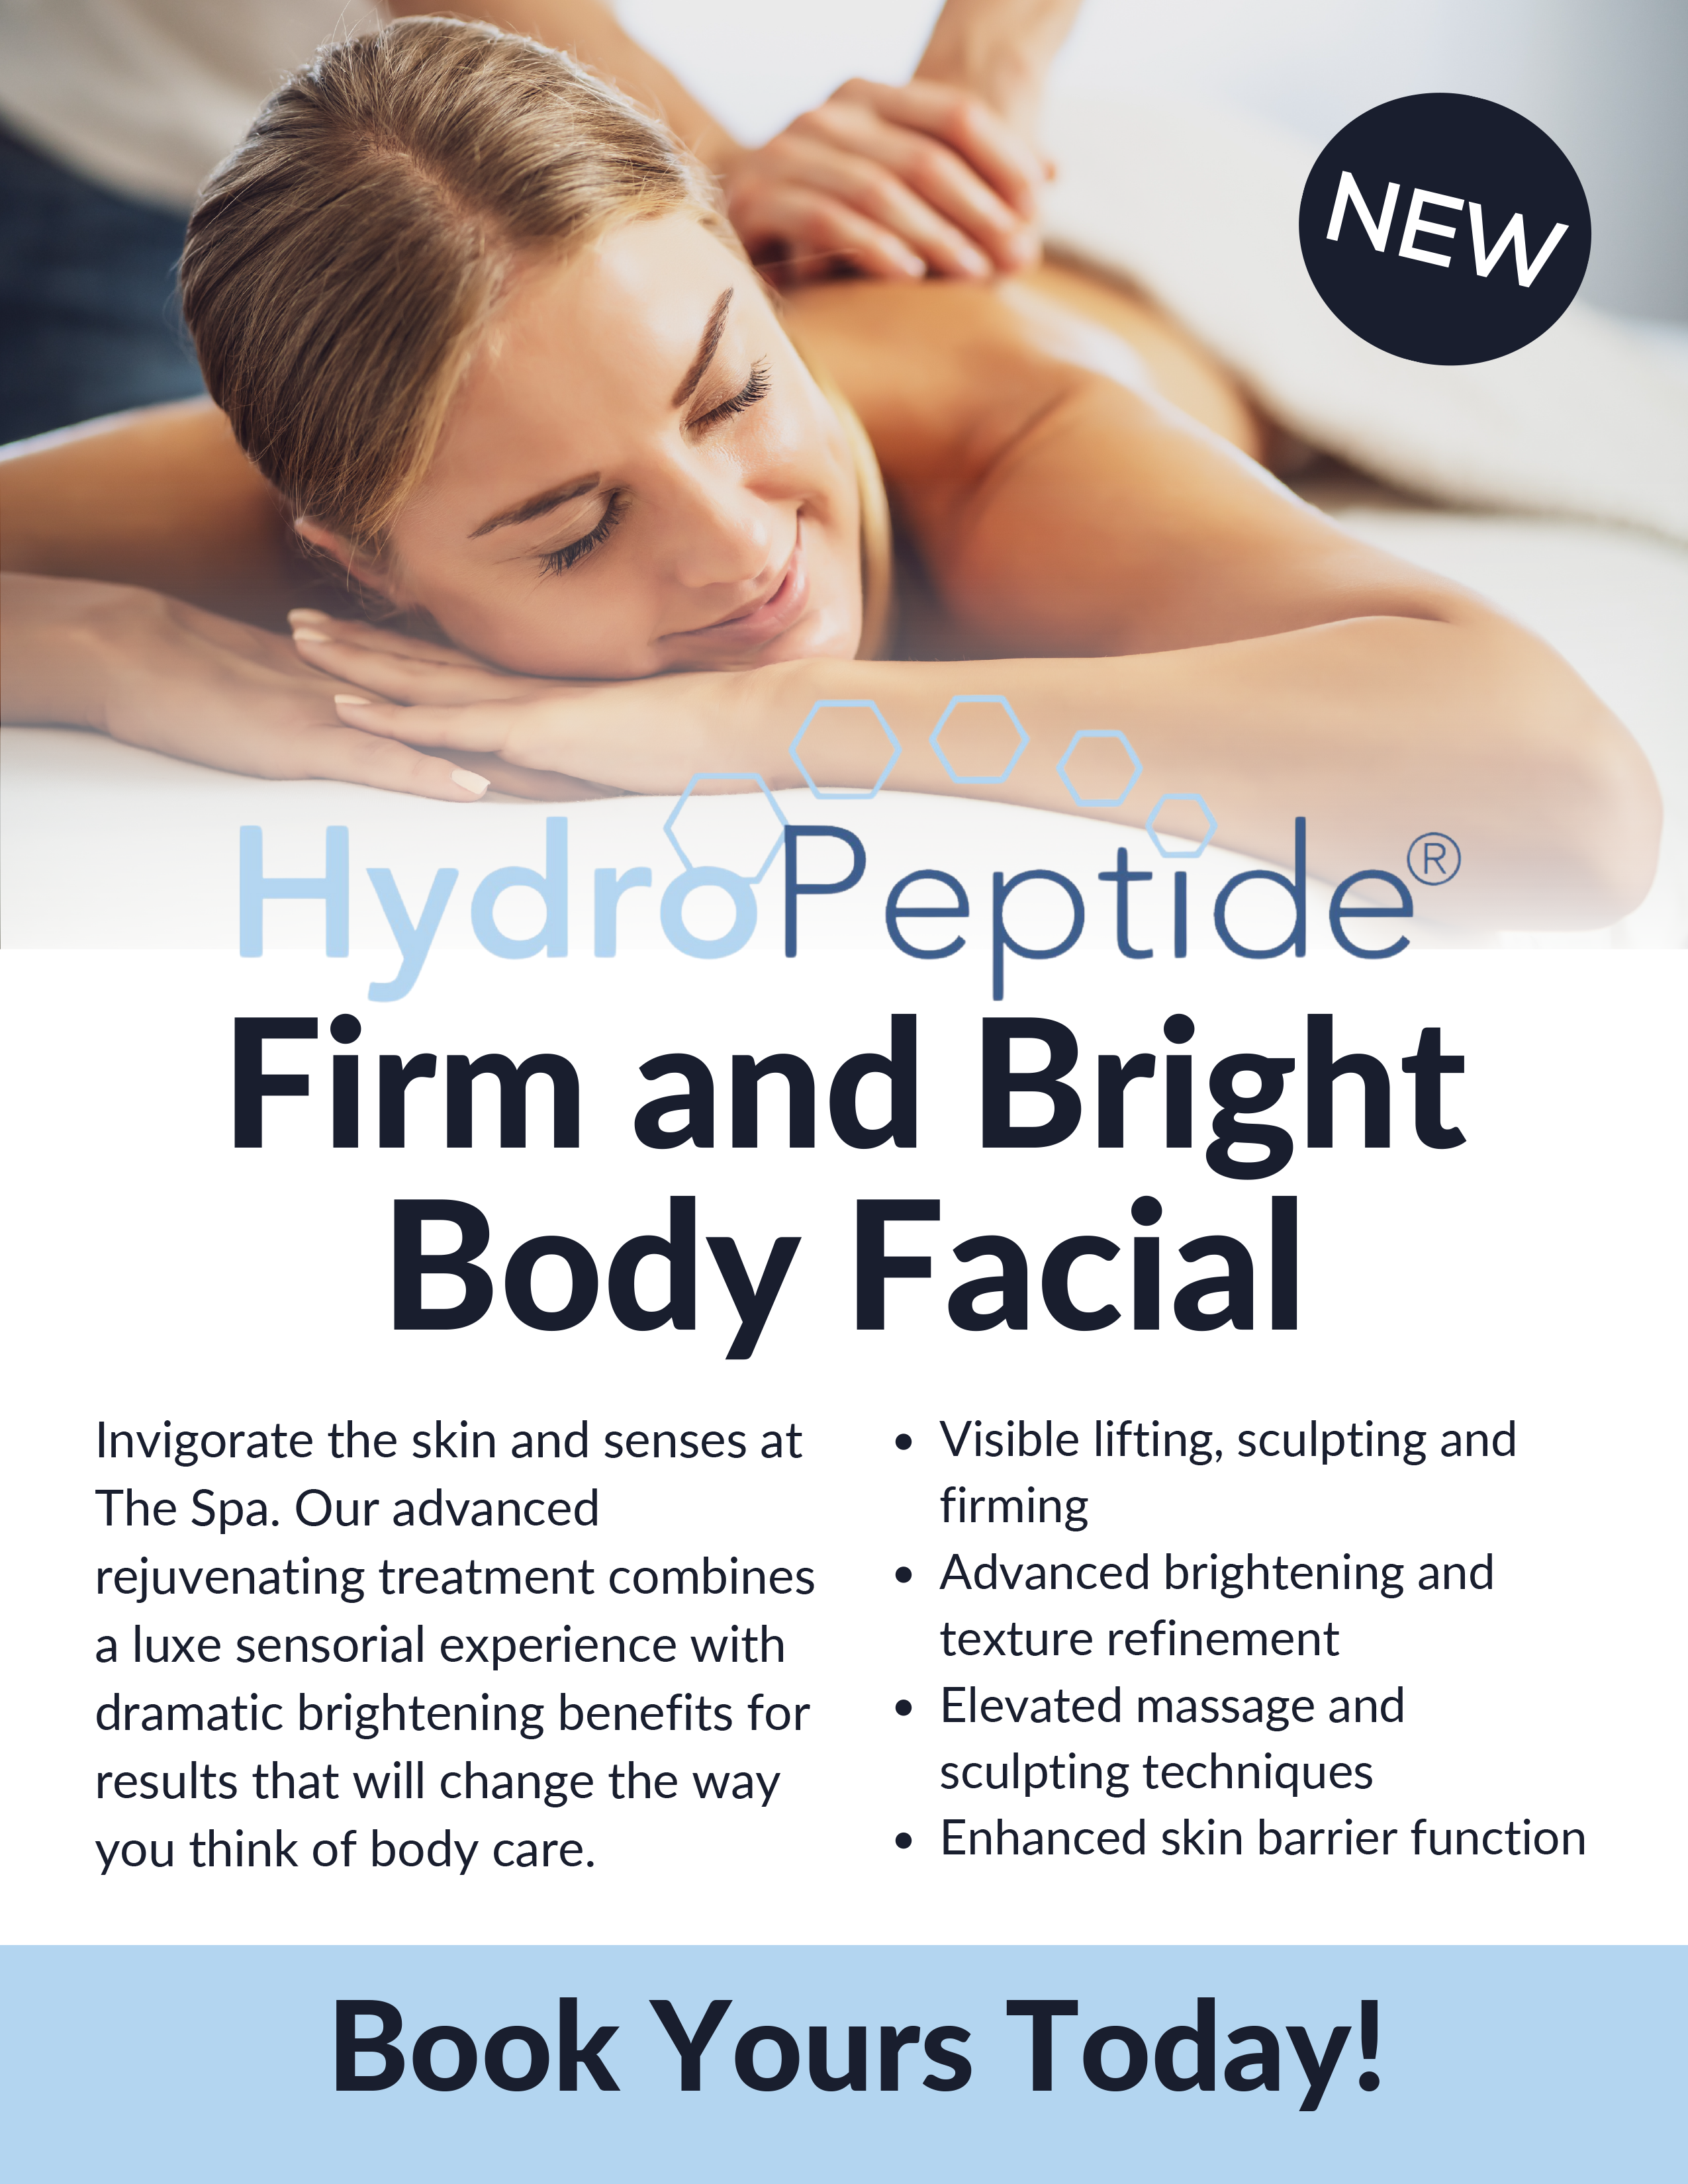 Wheaton Sport Center Spa Promos - HydroPeptide Body Facial